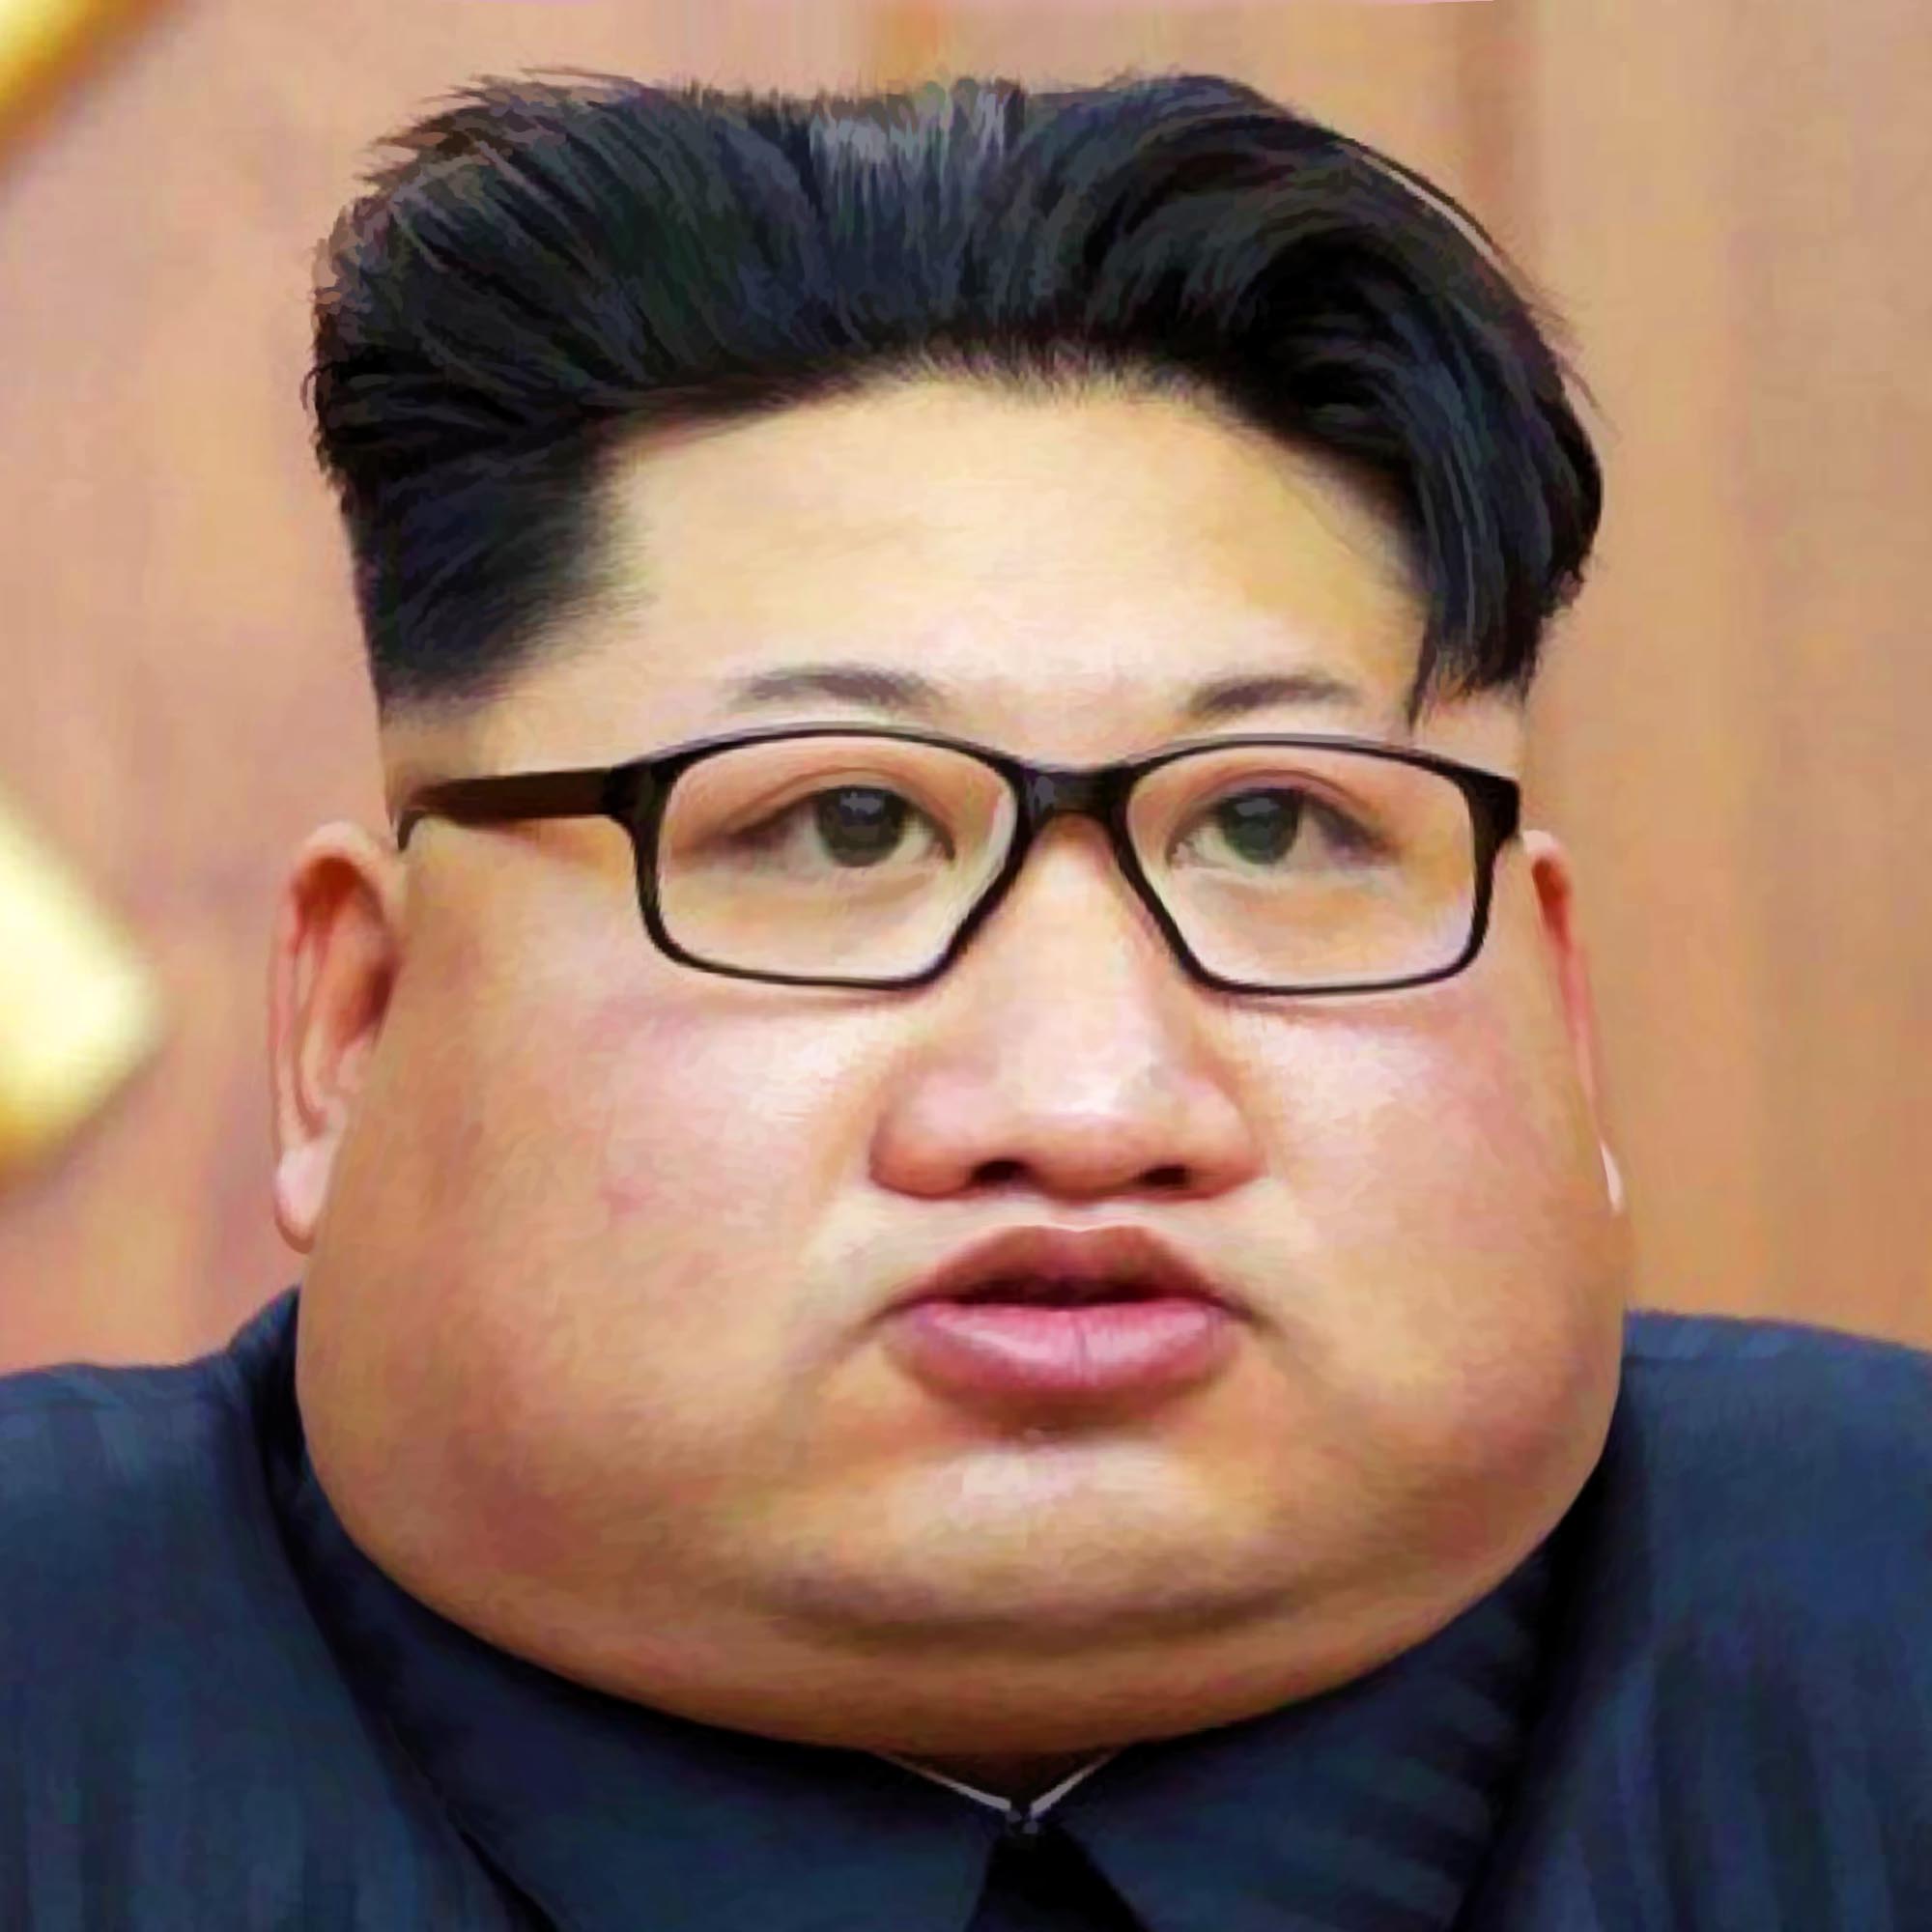 Kim Jong-un Nordkorea kleienr dicker Diktator merkel fan Fettel qpress